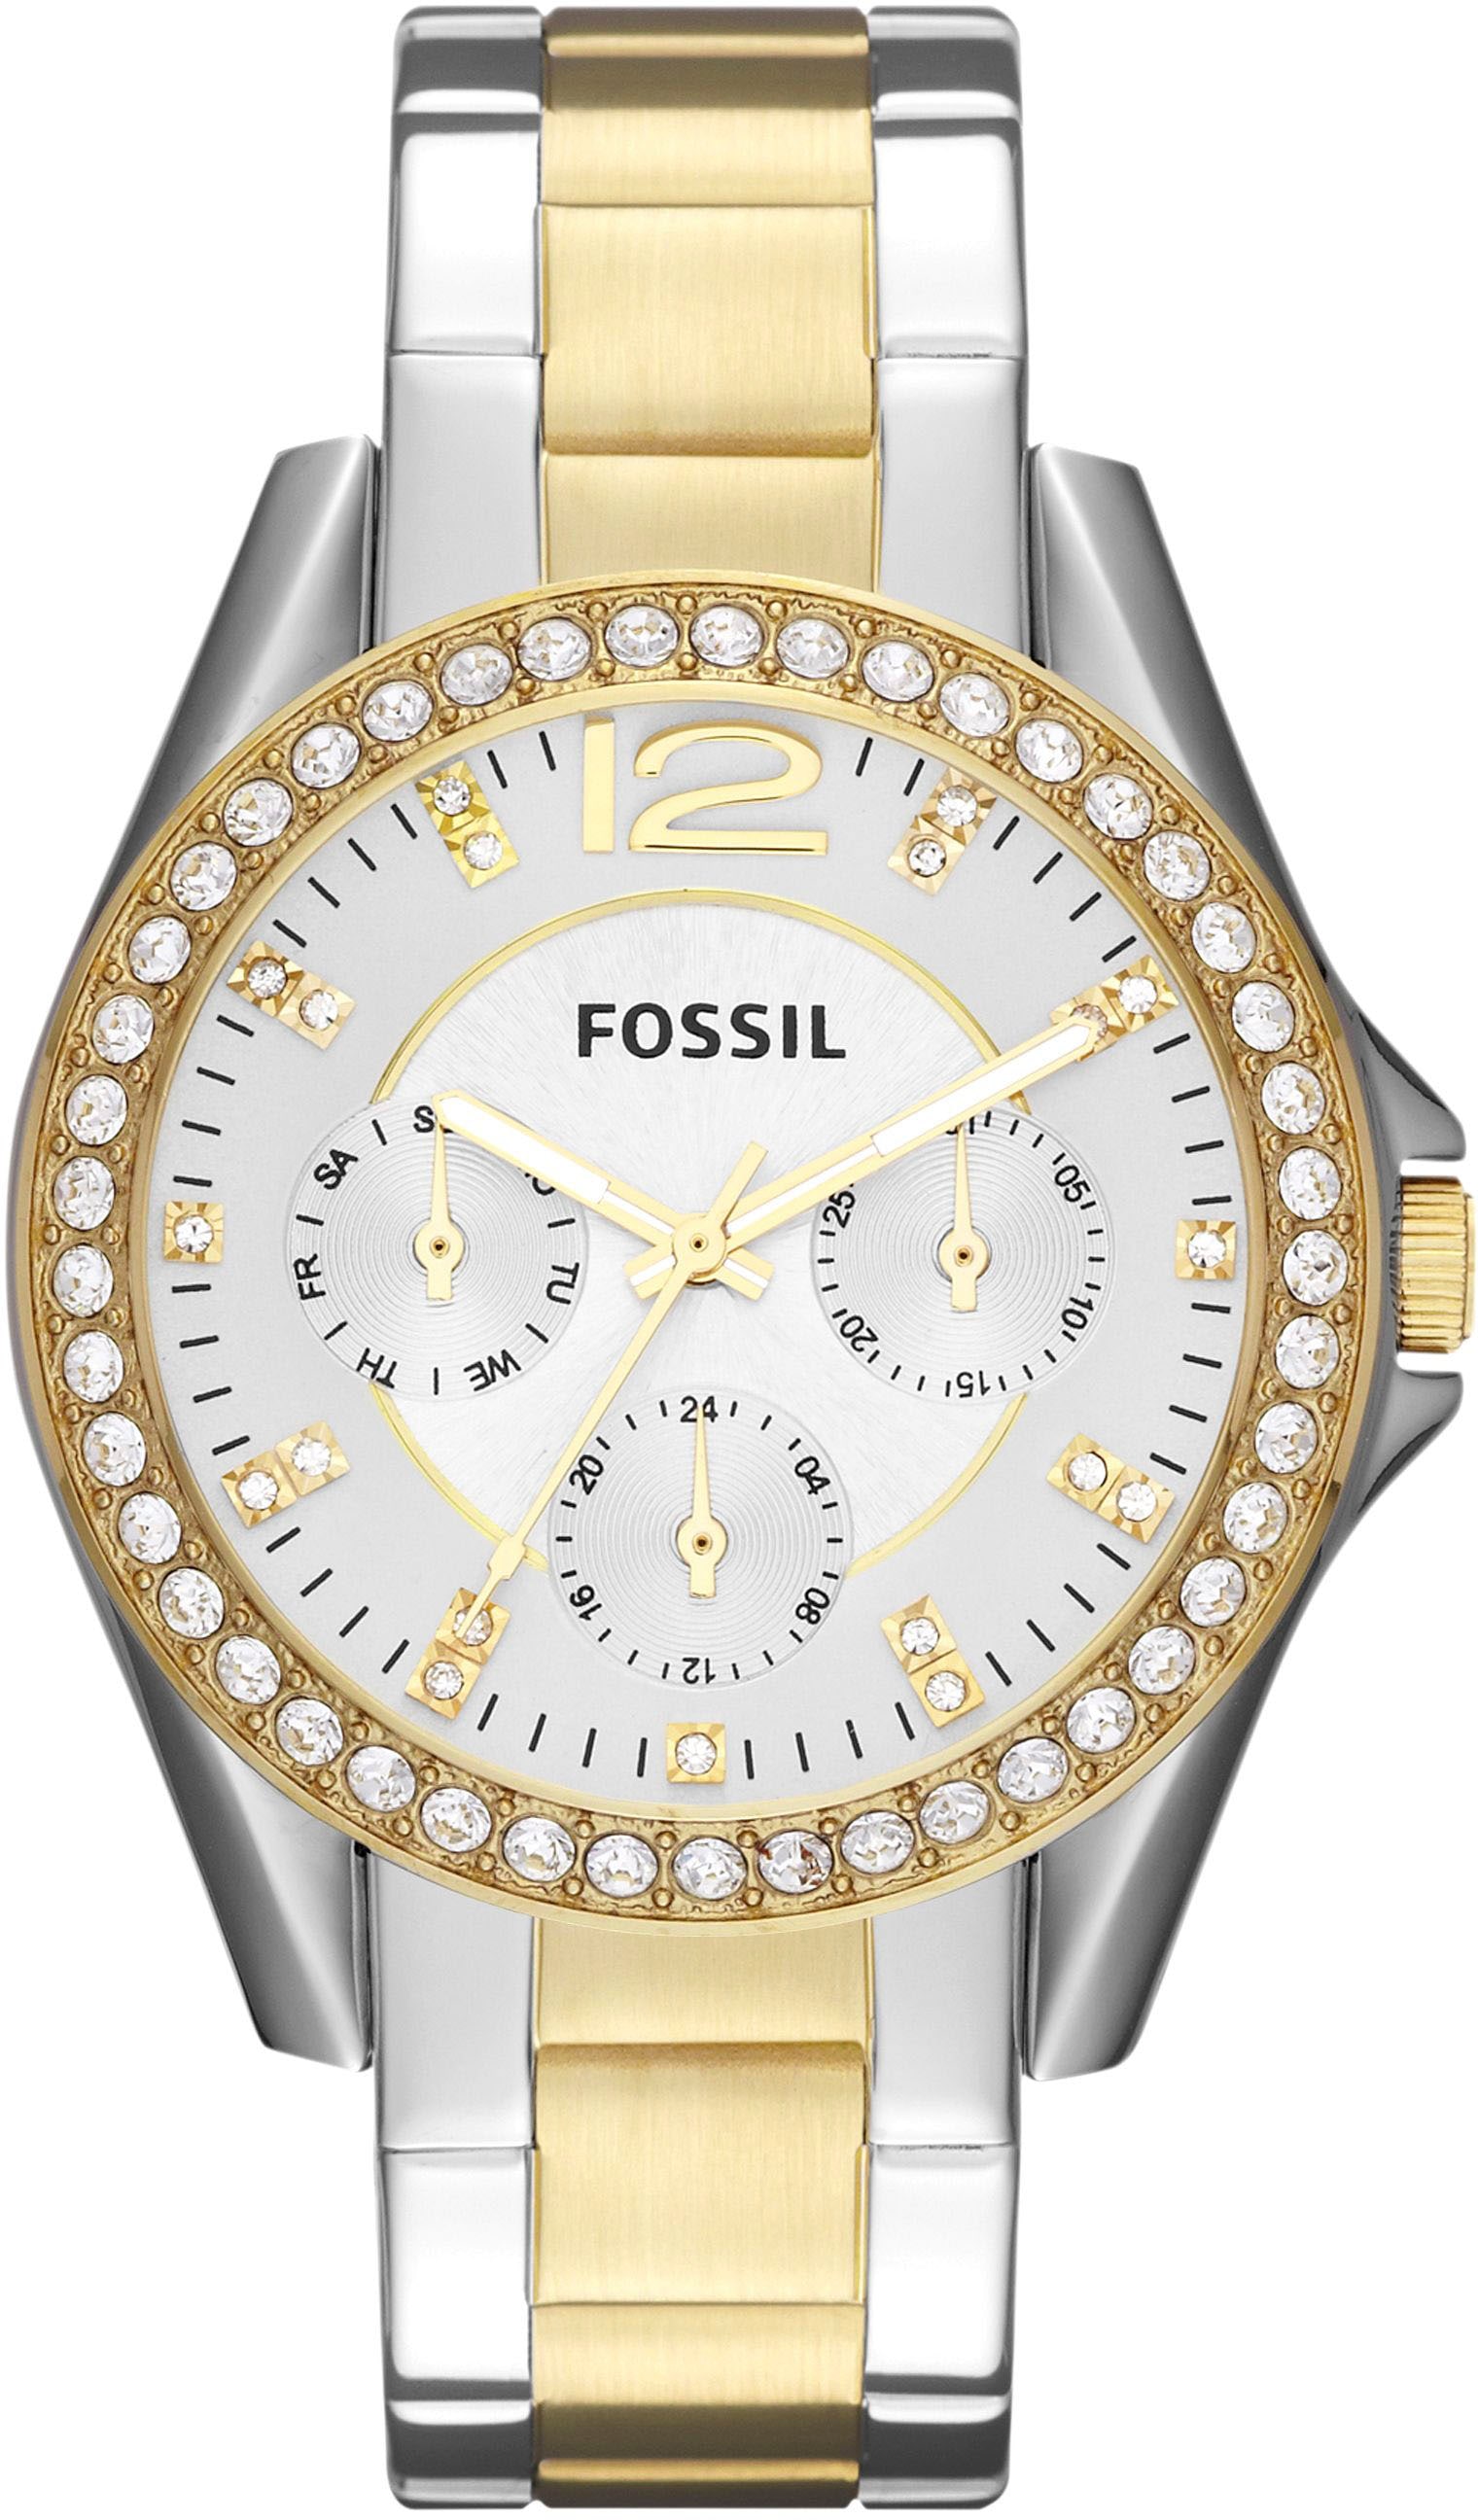 Uhren Fossil günstig kaufen online